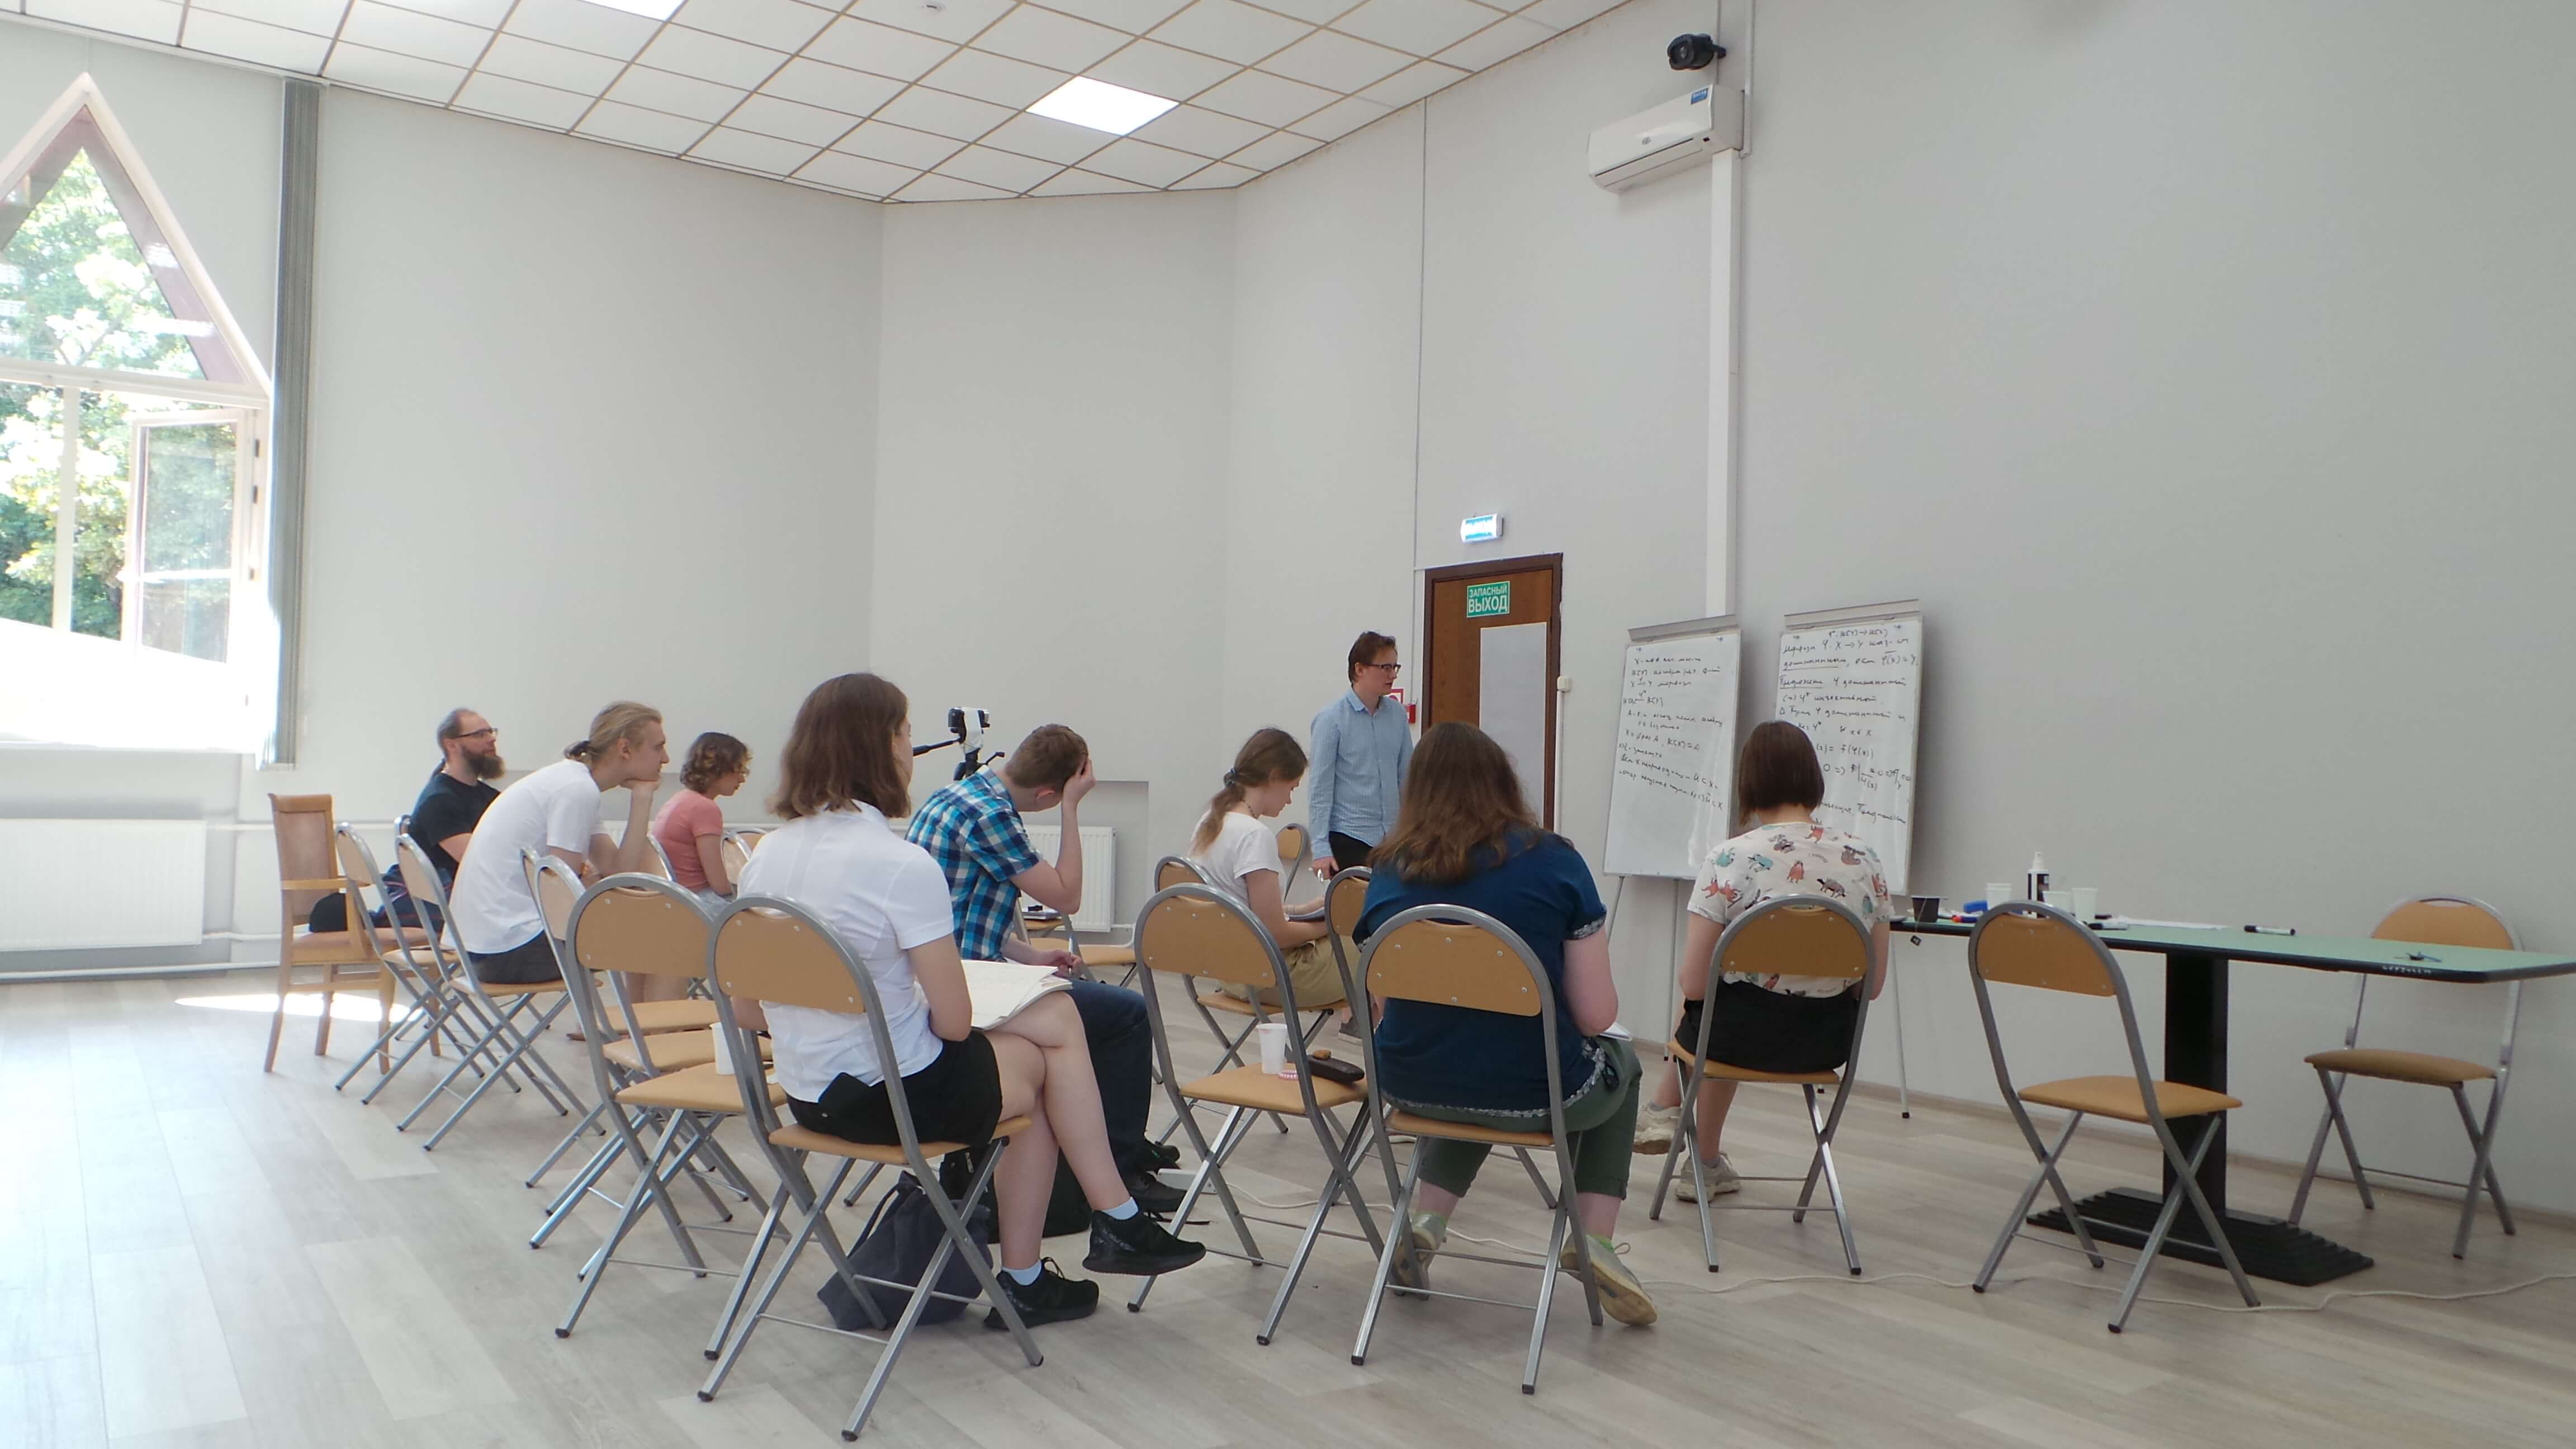 Summer school "Algebraic transformation groups", r.h. "Pyalovo", Moscow region, August 2022